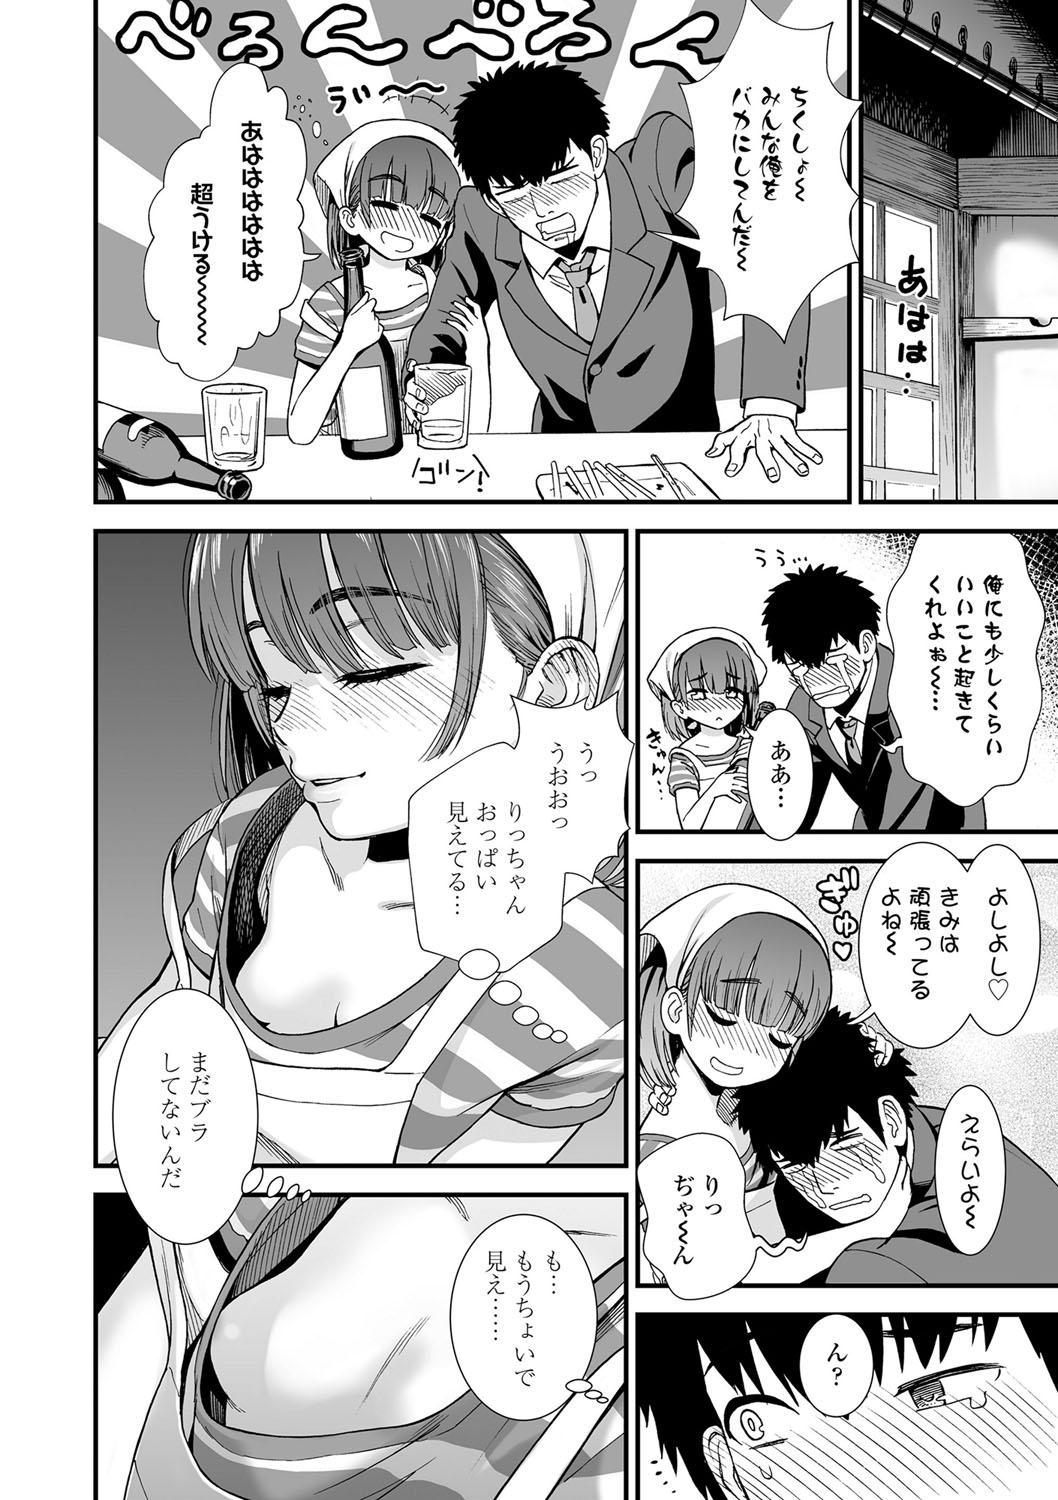 Screaming Ore wa Kuzu dakara koso Sukuwareru Kenri ga Aru! Femdom - Page 9